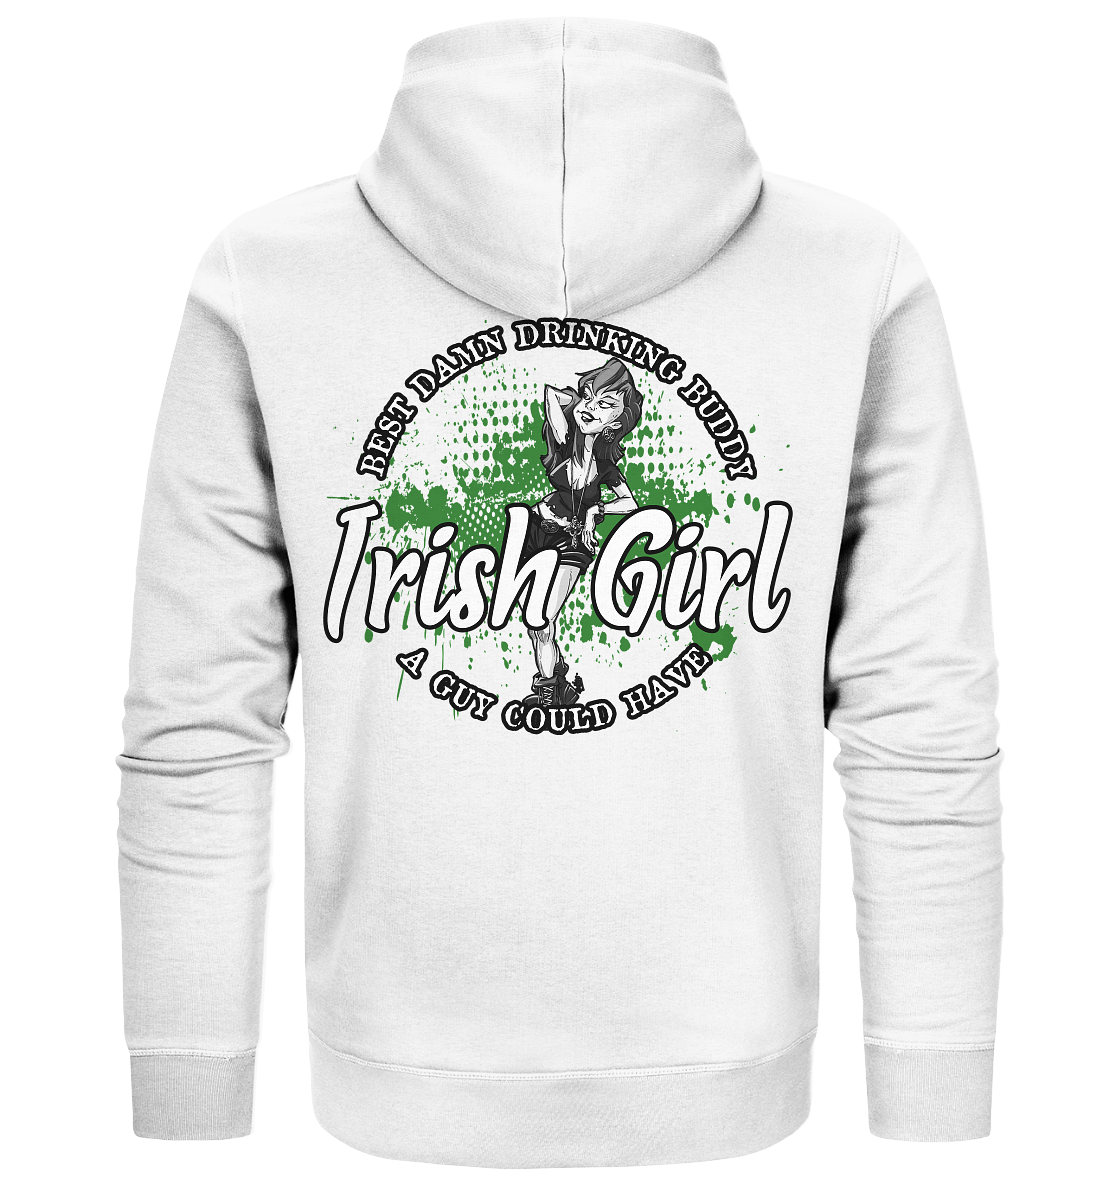 Irish Girl "Drinking Buddy" - Organic Zipper